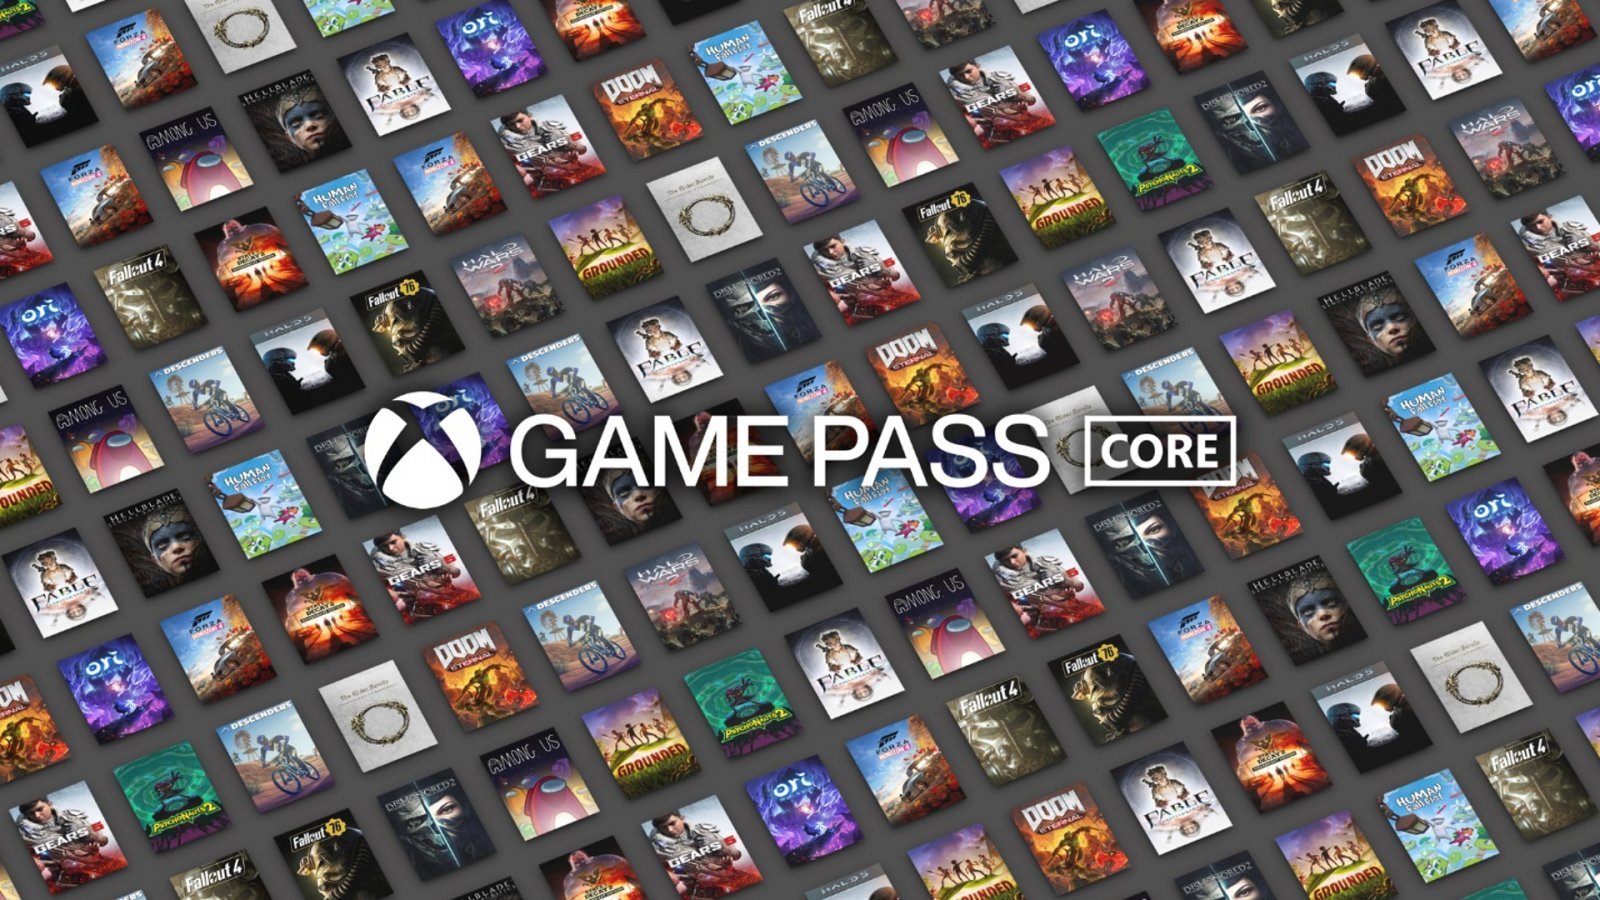 Xbox Game Pass Core annunciato ufficialmente, sostituirà il LIVE Gold